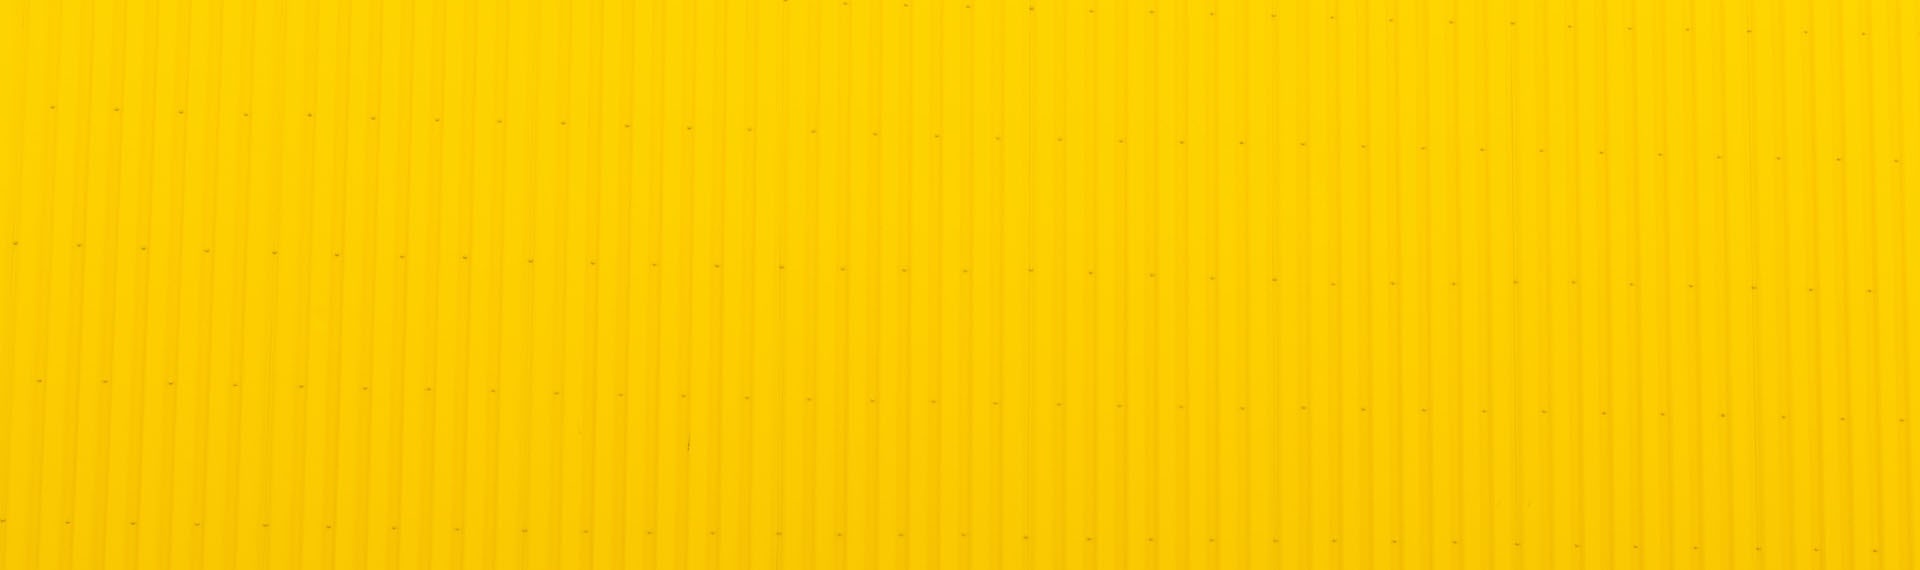 yellow-wall-unsplash-ij25m7fxqtk-cta-banner